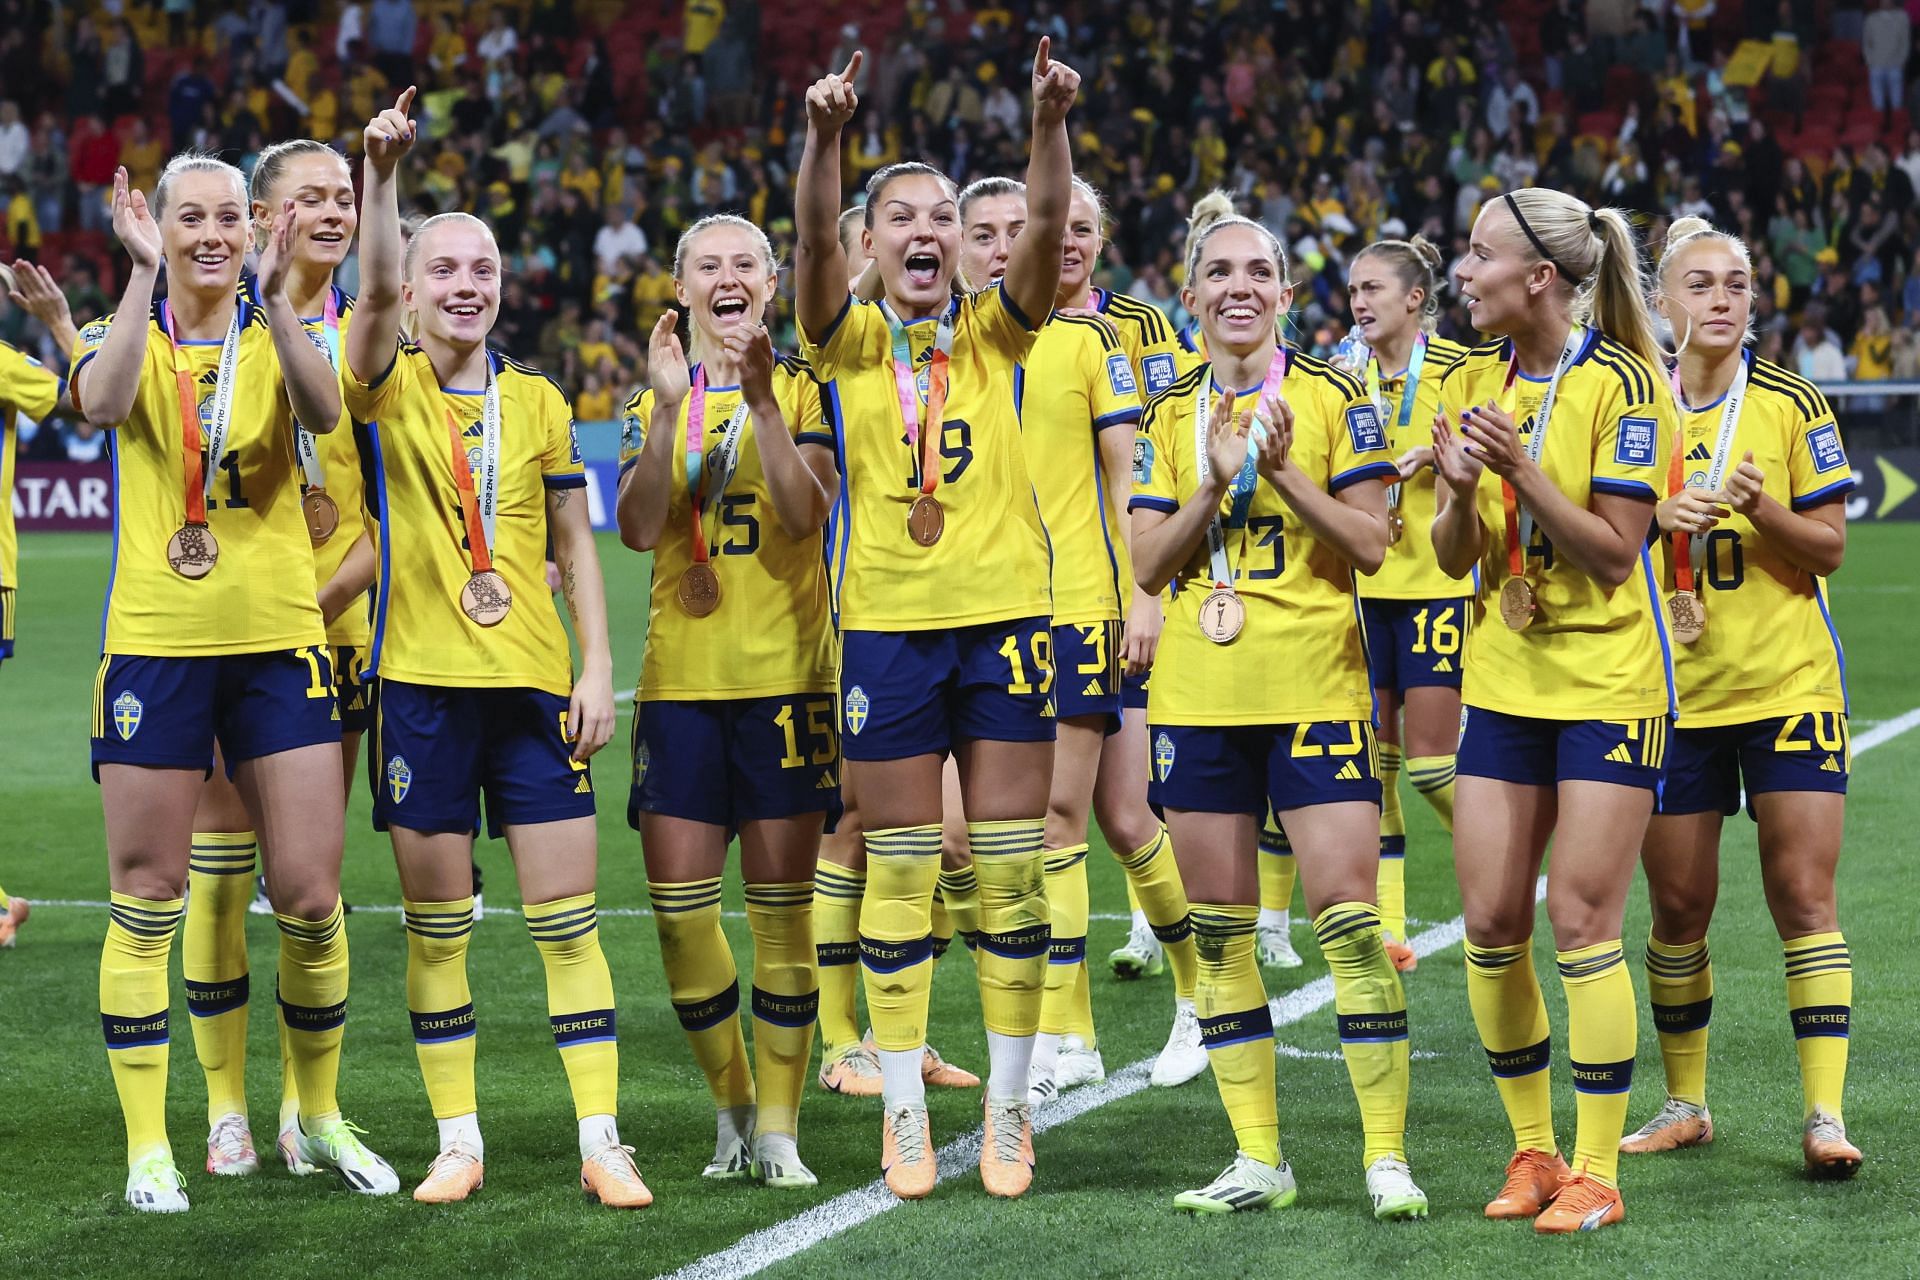 जीत के बाद दर्शकों का अभिवादन करती स्वीडिश महिला खिलाड़ीं।